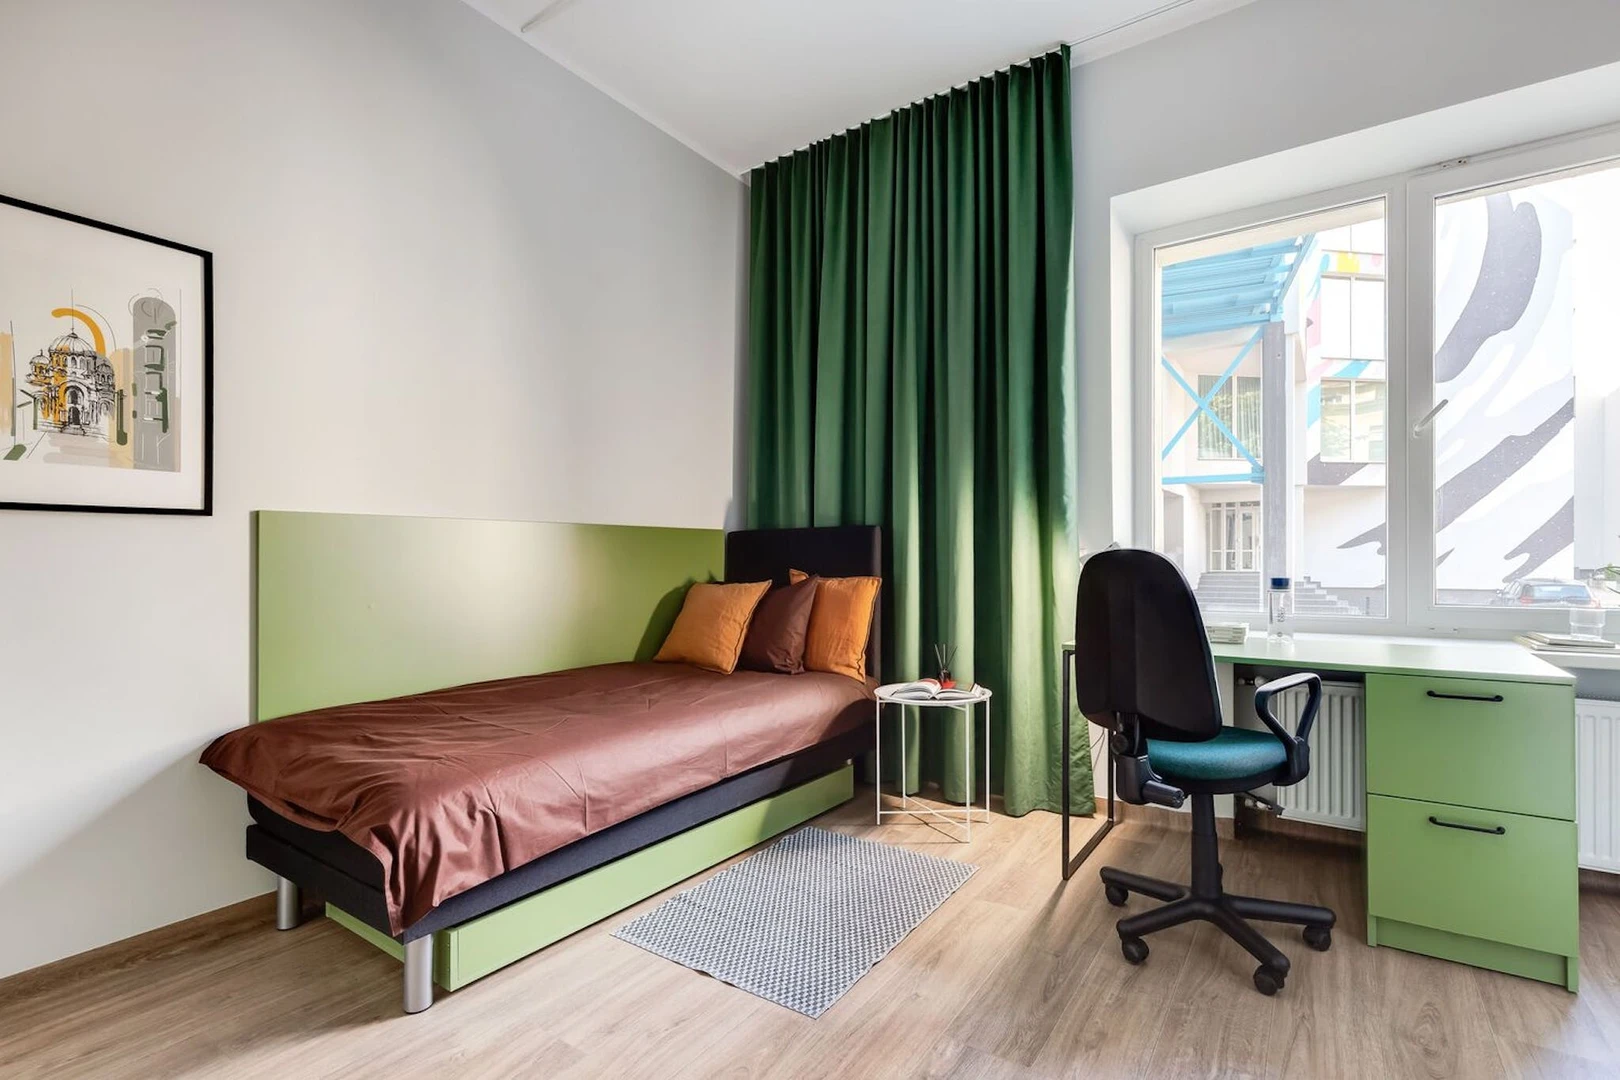 Alquiler de habitaciones por meses en Kaunas